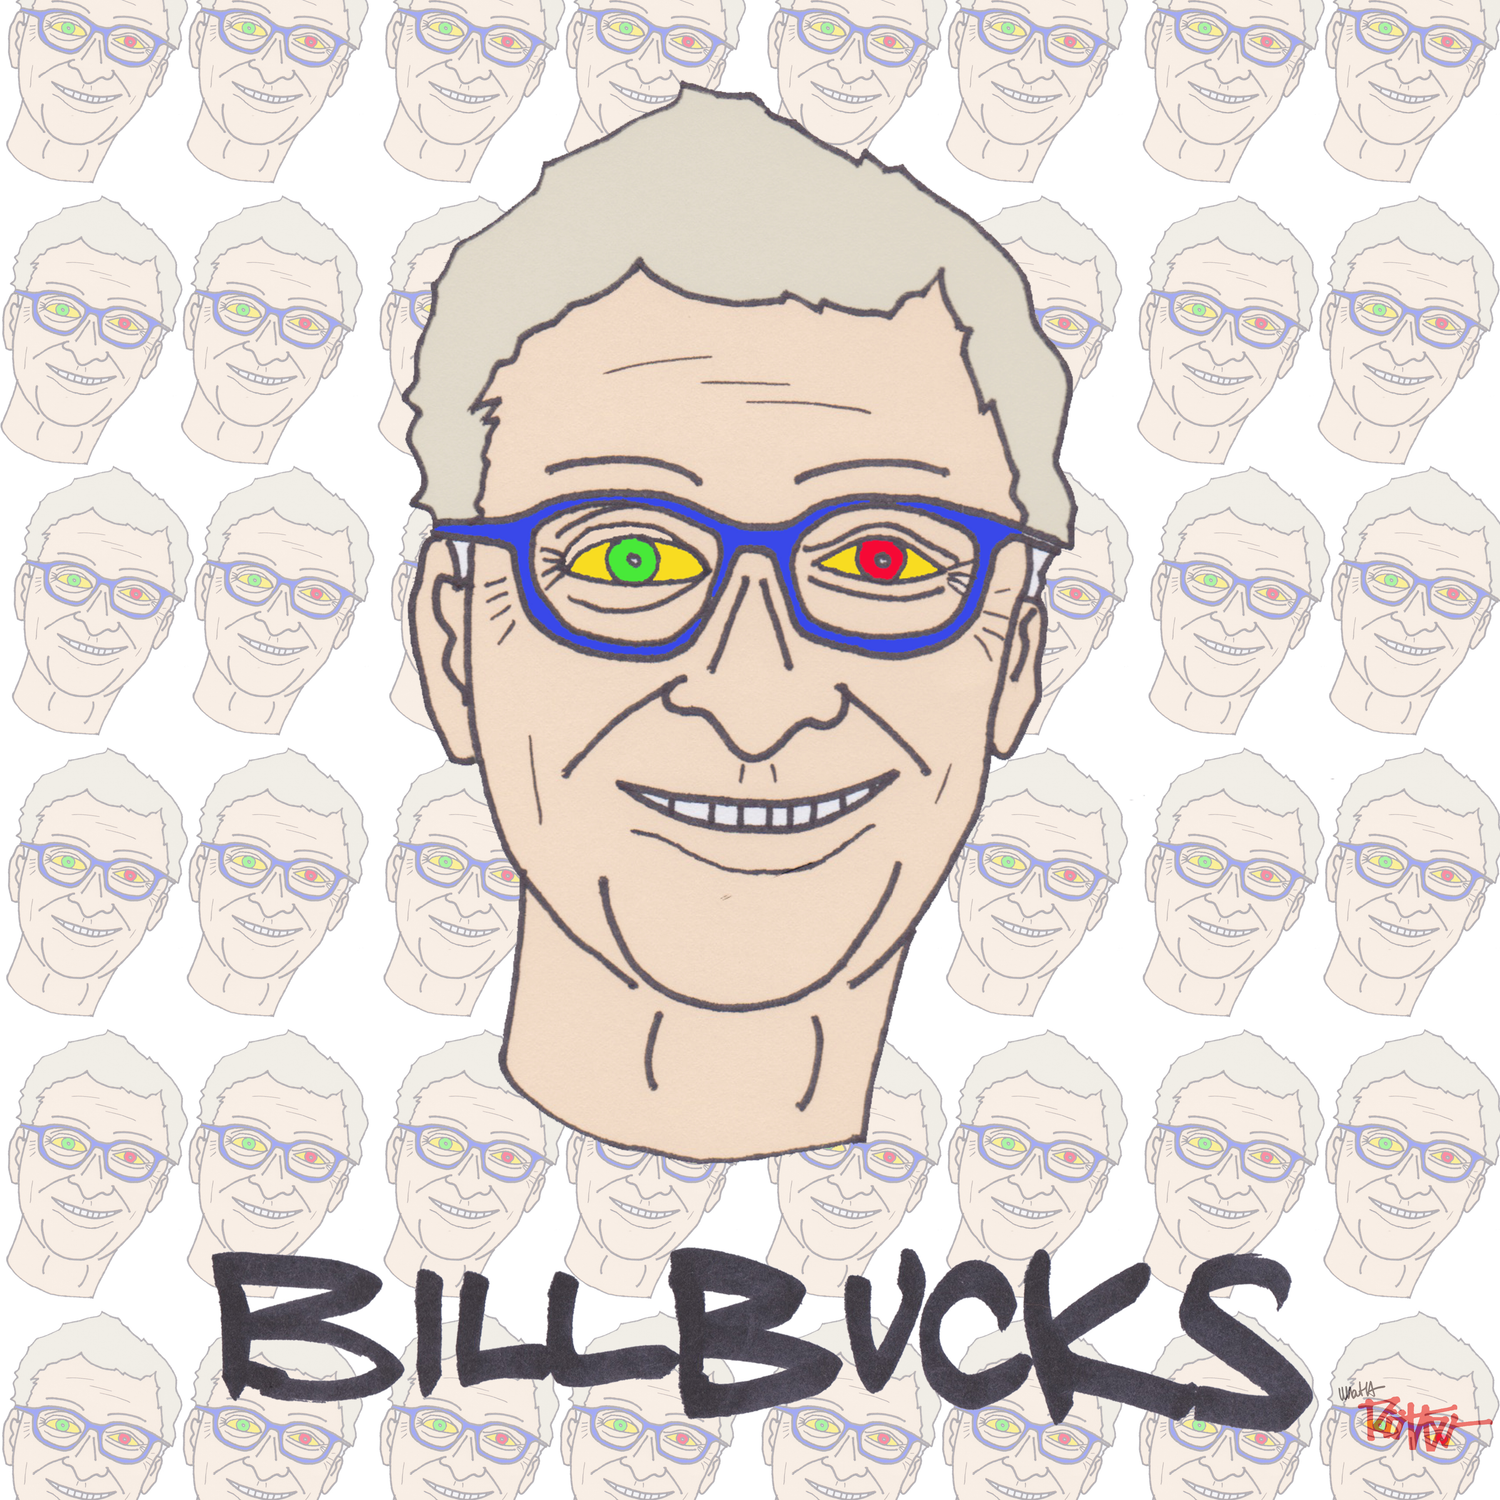 BILLBUCKS